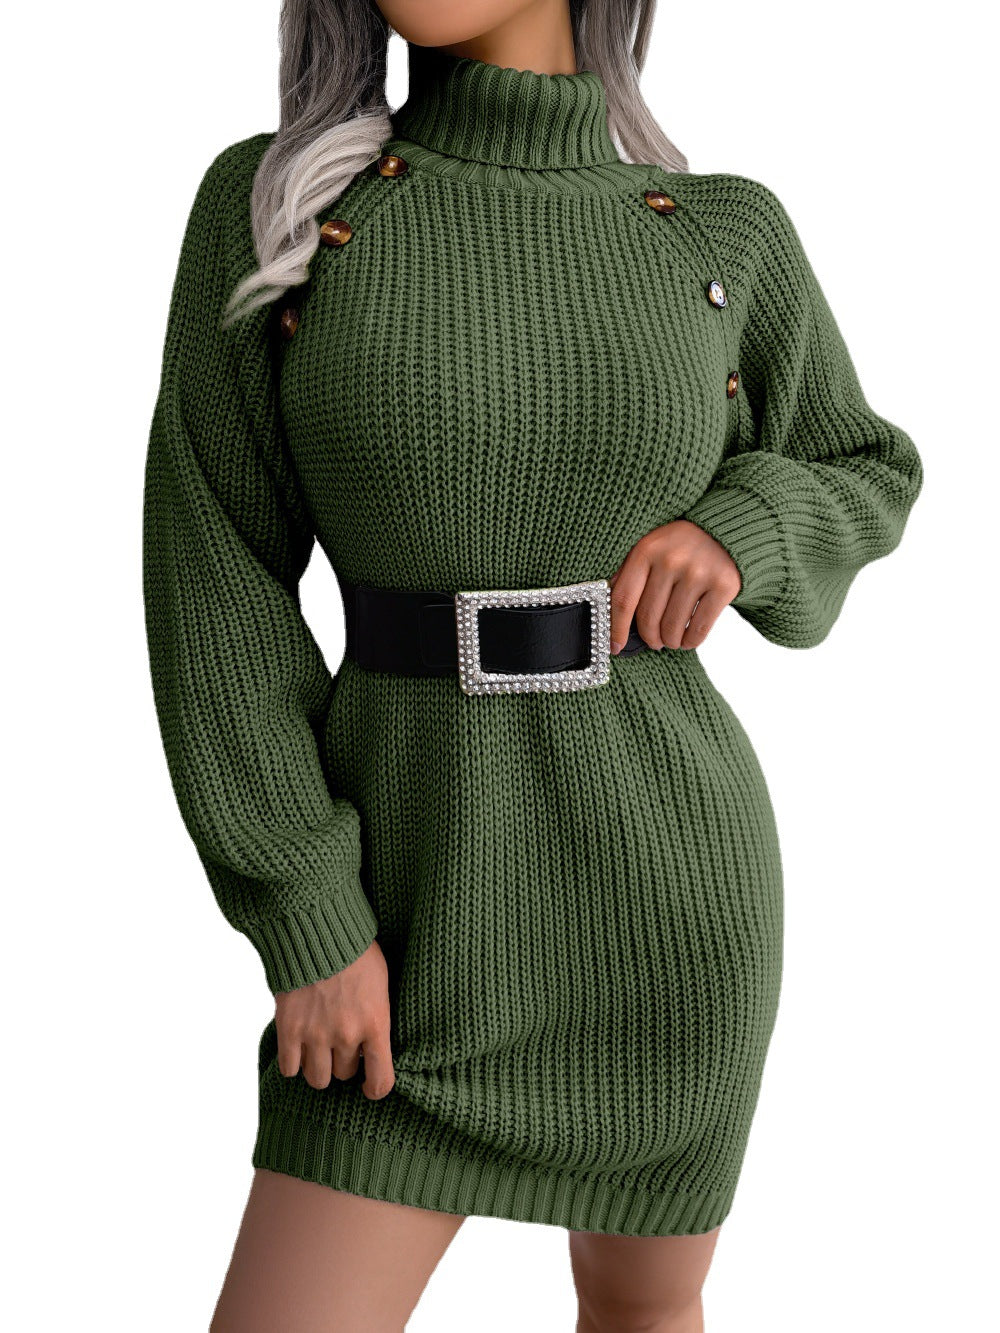 Stand Collar Long Sleeve Women's Winter Sweater Dress